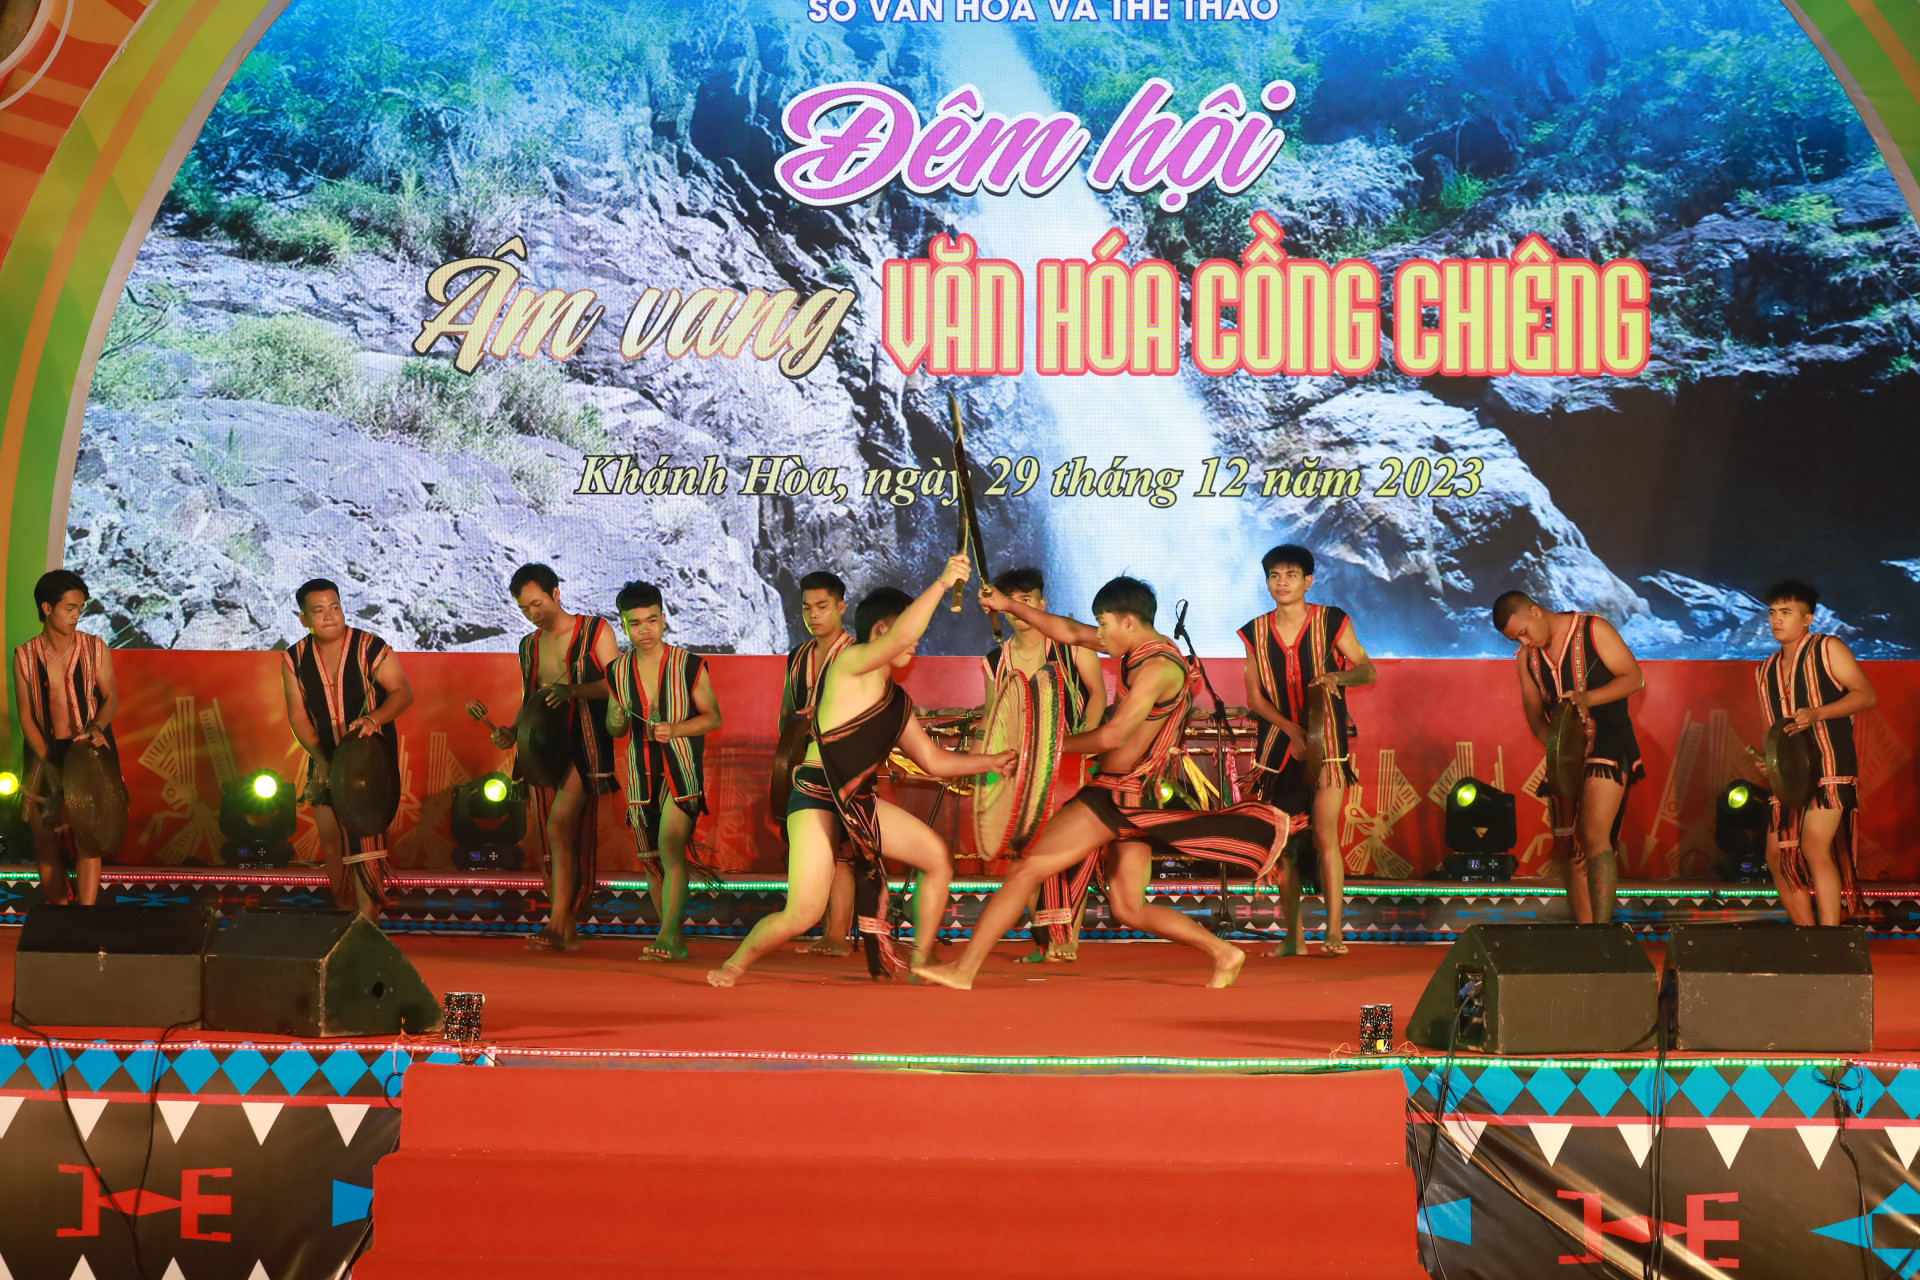 Đoàn nghệ nhân đến từ tỉnh Gia Lai khuấy động không khí đêm hội với màn biểu diễn cồng chiêng thể hiện khí chất oai hùng của những chiến binh trong sử thi Đam San.